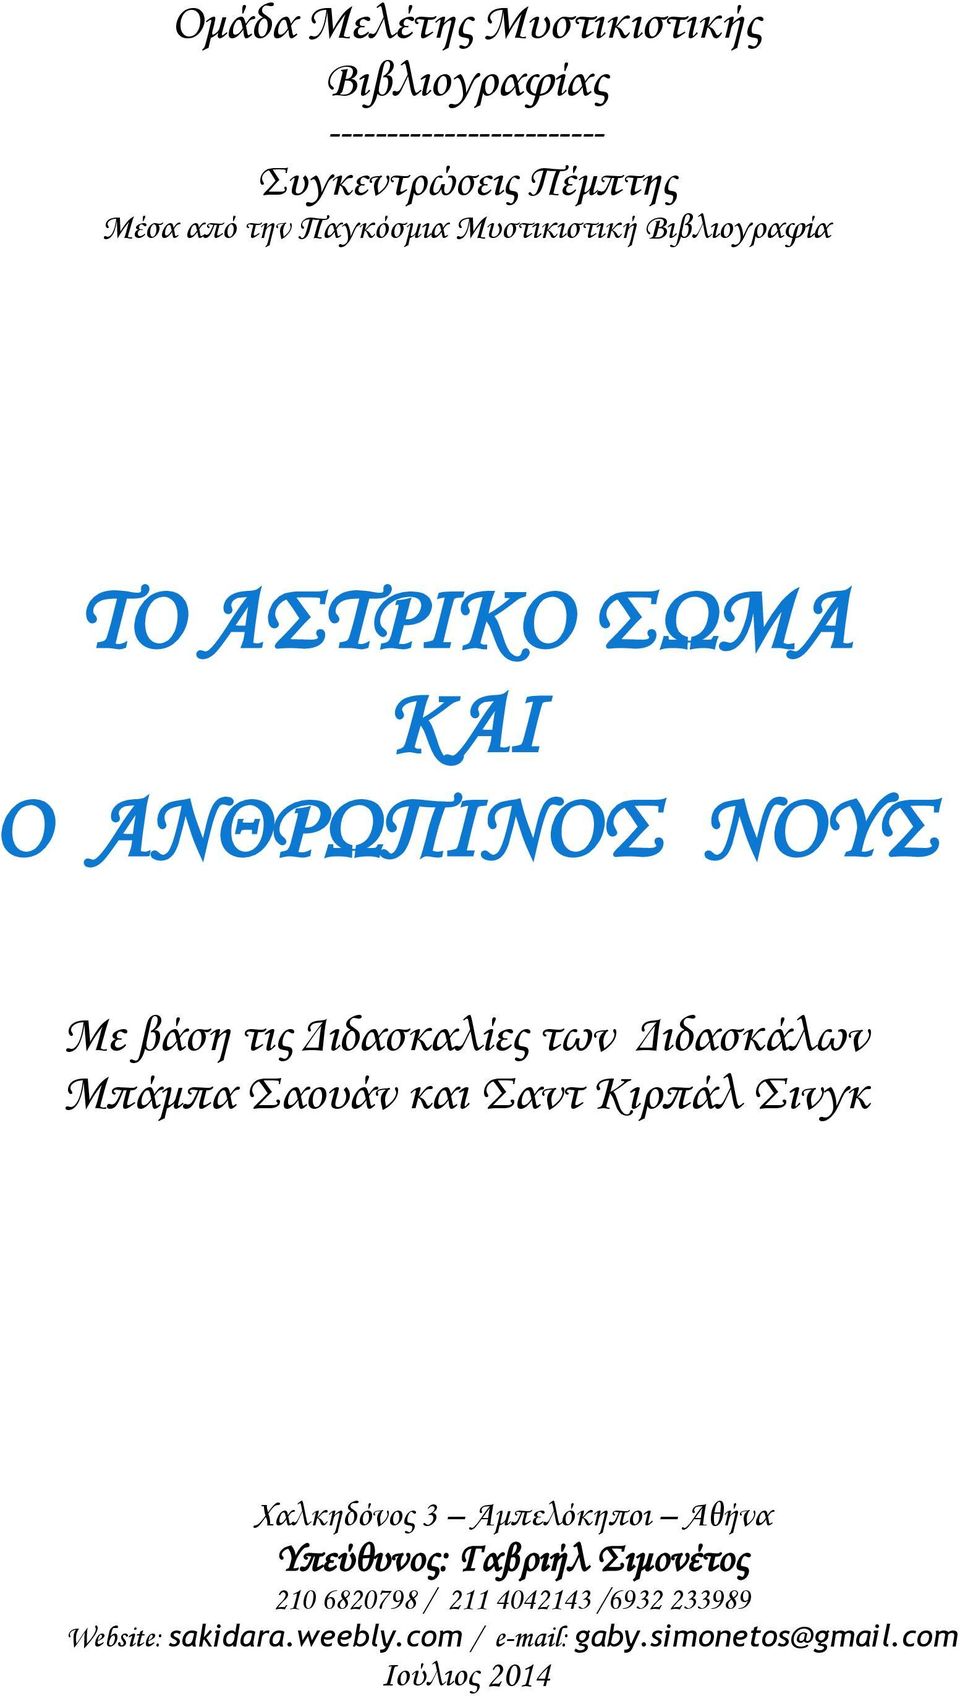 Διδασκάλων Μπάμπα Σαουάν και Σαντ Κιρπάλ Σινγκ Χαλκηδόνος 3 Αμπελόκηποι Αθήνα Υπεύθυνος: Γαβριήλ Σιμονέτος